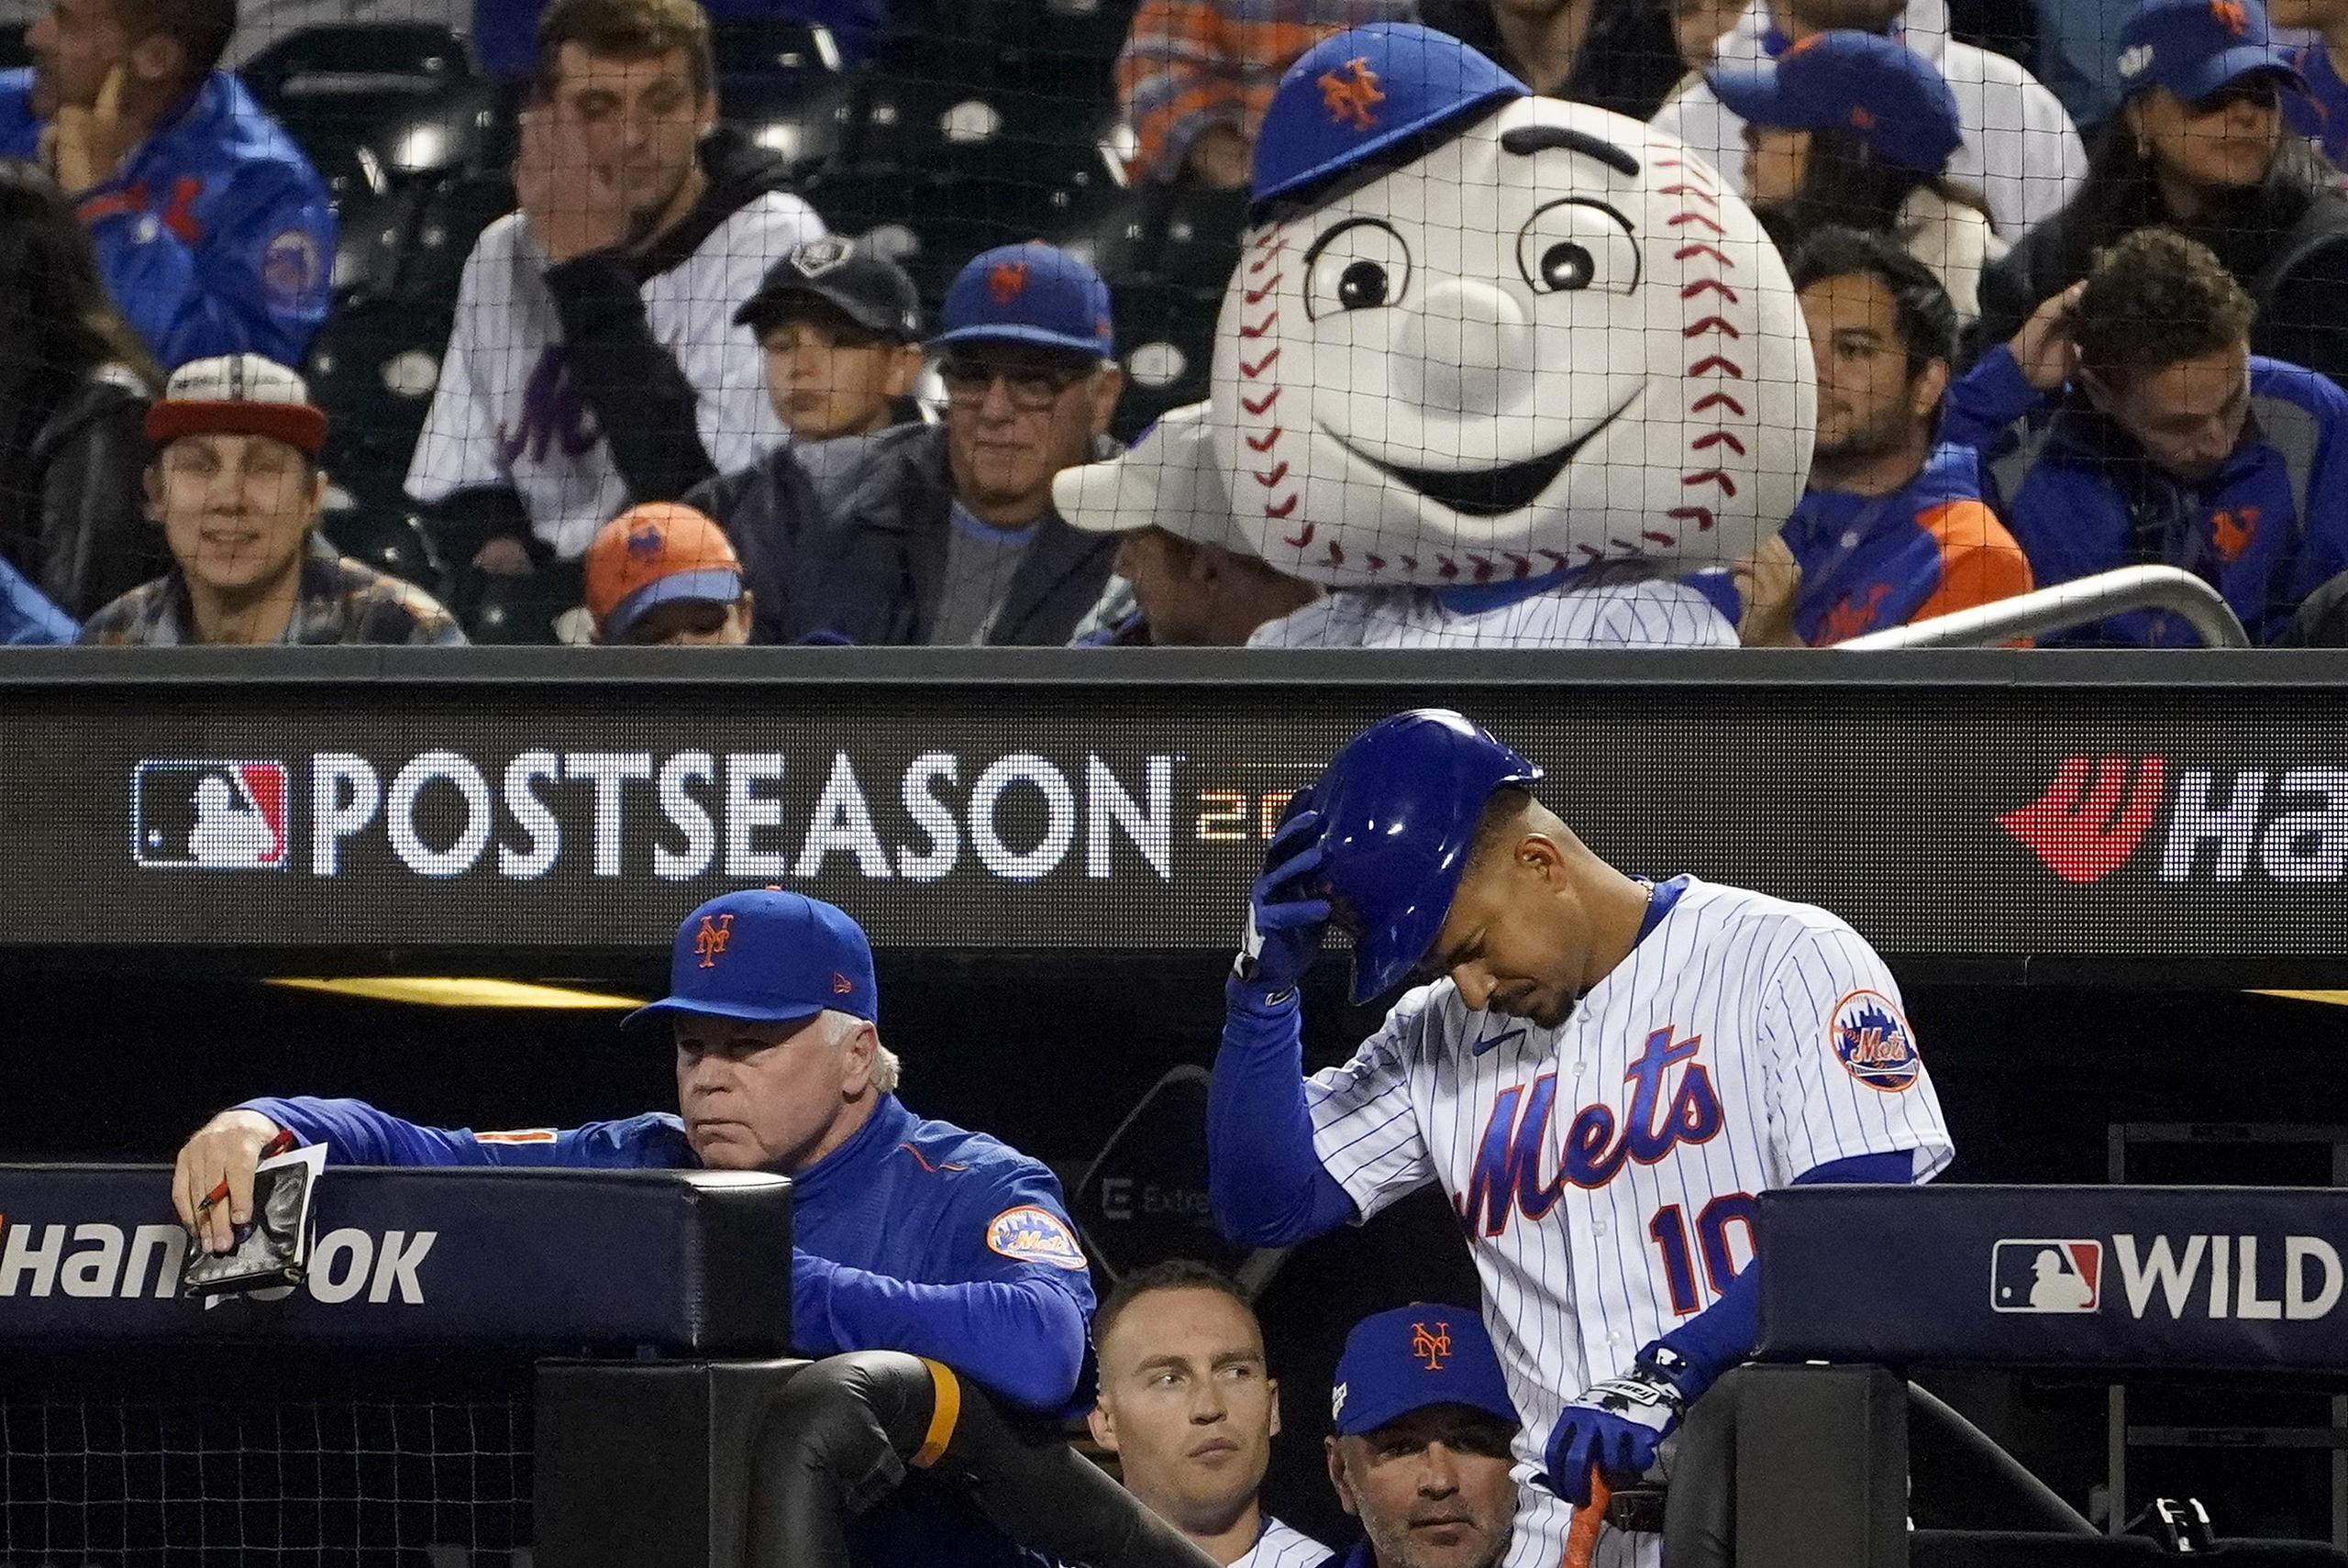 El piloto de los Mets, Buck Showalter, observa mientras Eduardo Escobar se prepara para salir a batear.